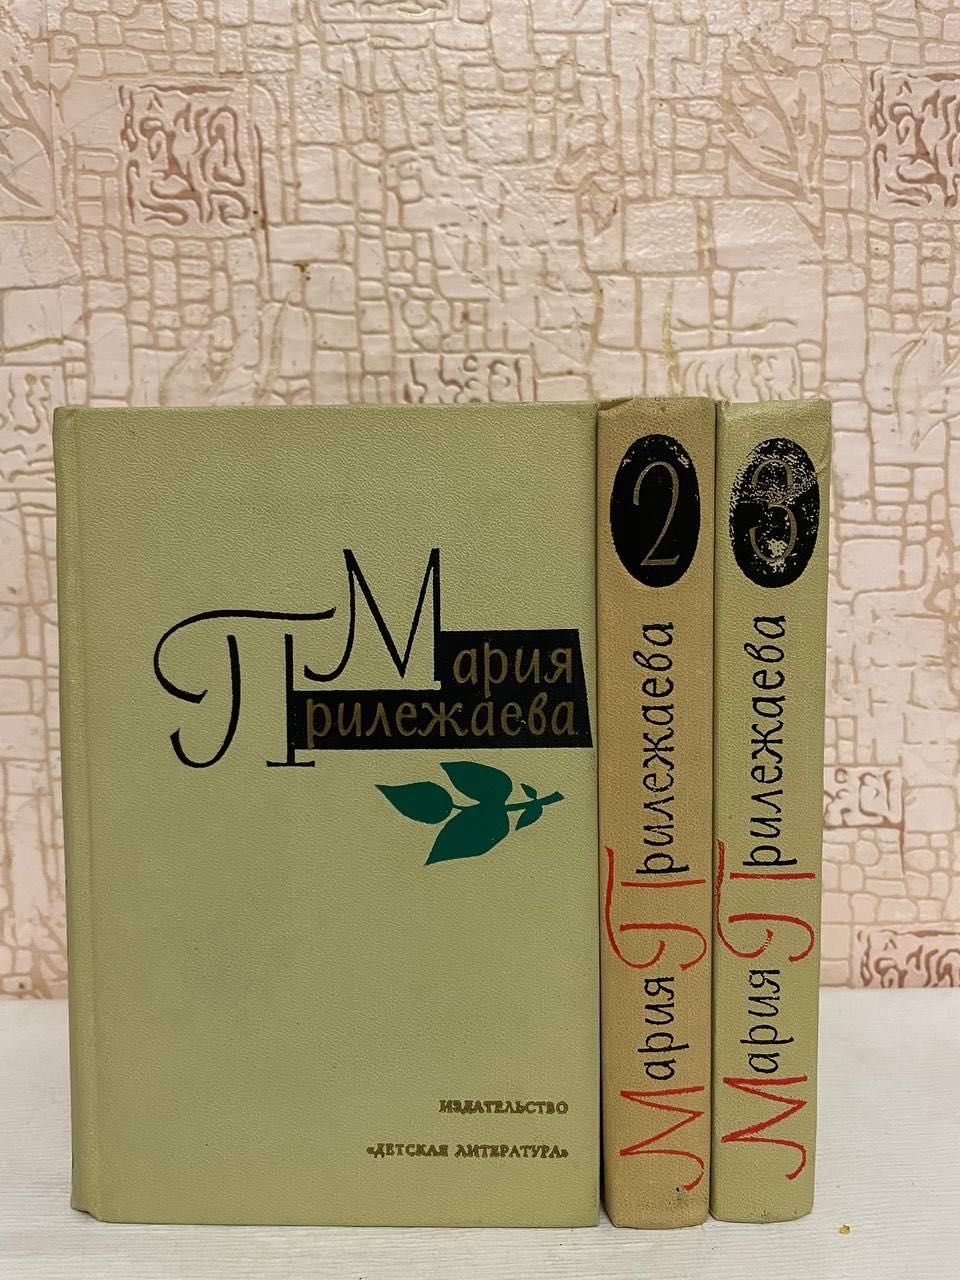 Прилежаева М. Собрание сочинений в 3 томах. 1973 - 1975г.